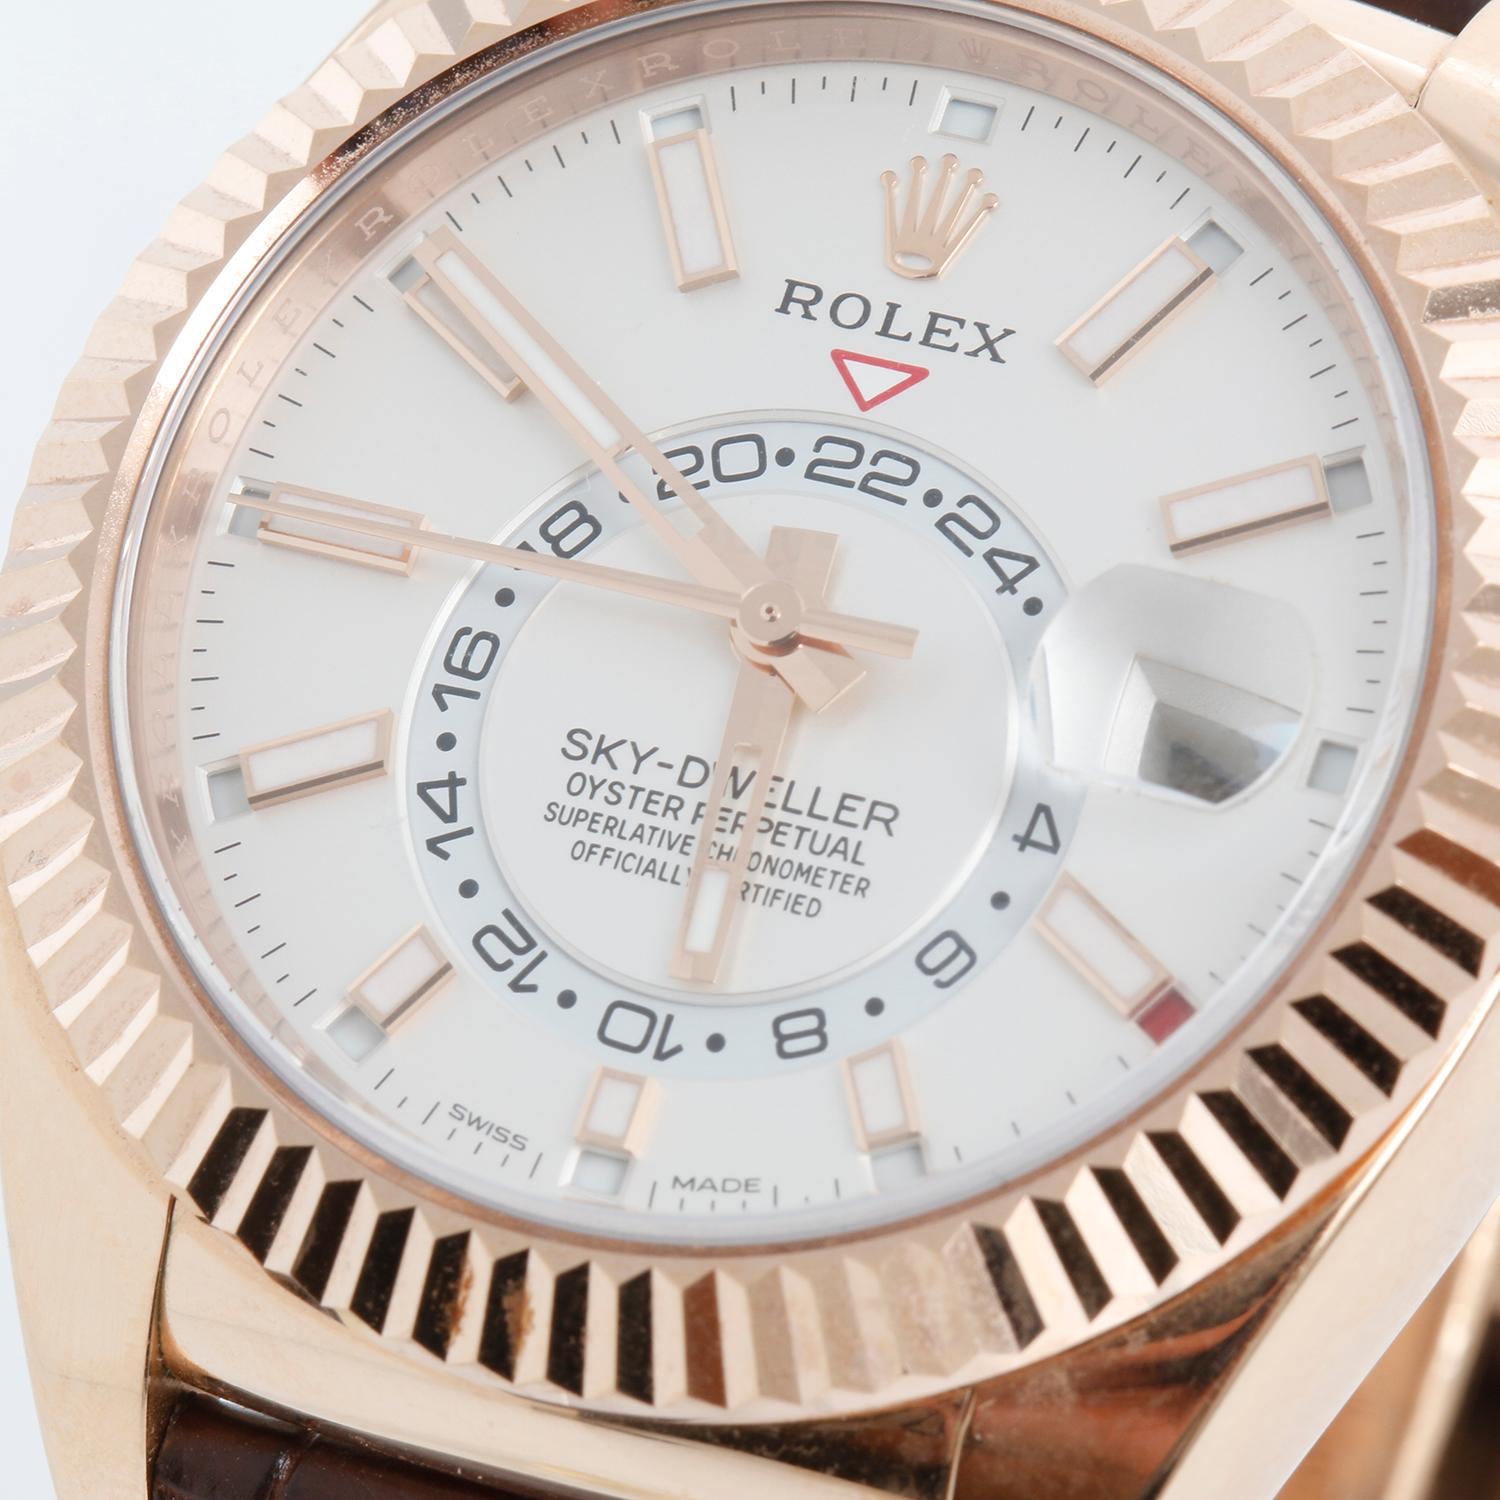 Rolex Montre Sky-Dweller 326135 pour hommes en or rose 18 carats avec calendrier annuel GMT  - Remontage automatique, calendrier perpétuel et fonction GMT. Boîtier en or rose 18 carats avec lunette cannelée  (42 mm de diamètre). Cadran blanc avec